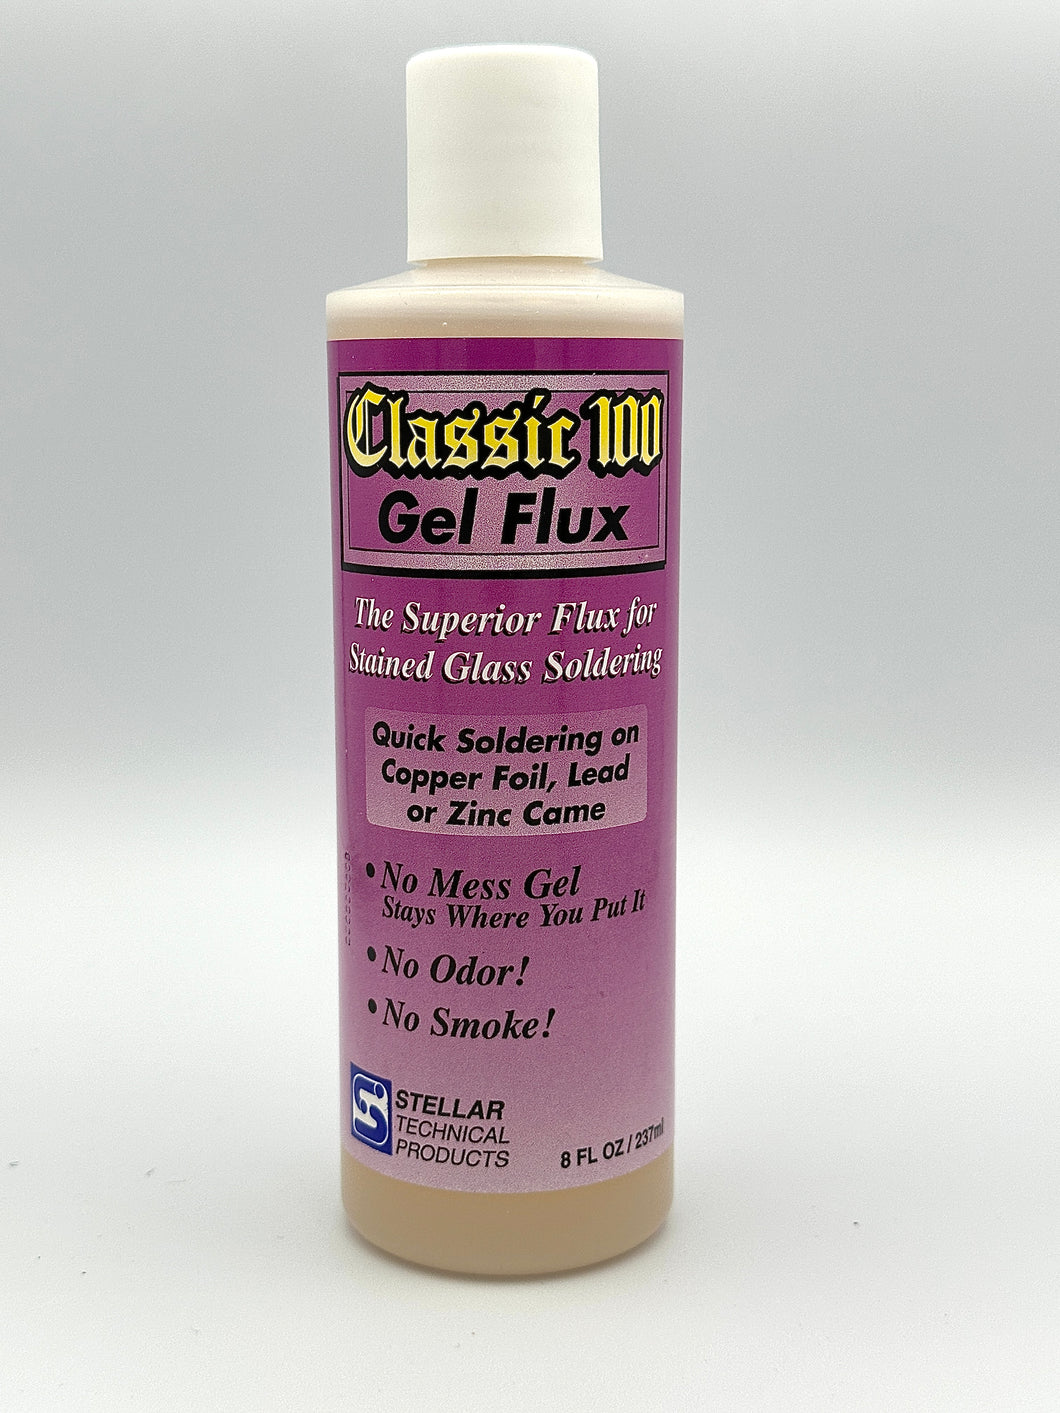 CLASSIC 100 GEL FLUX